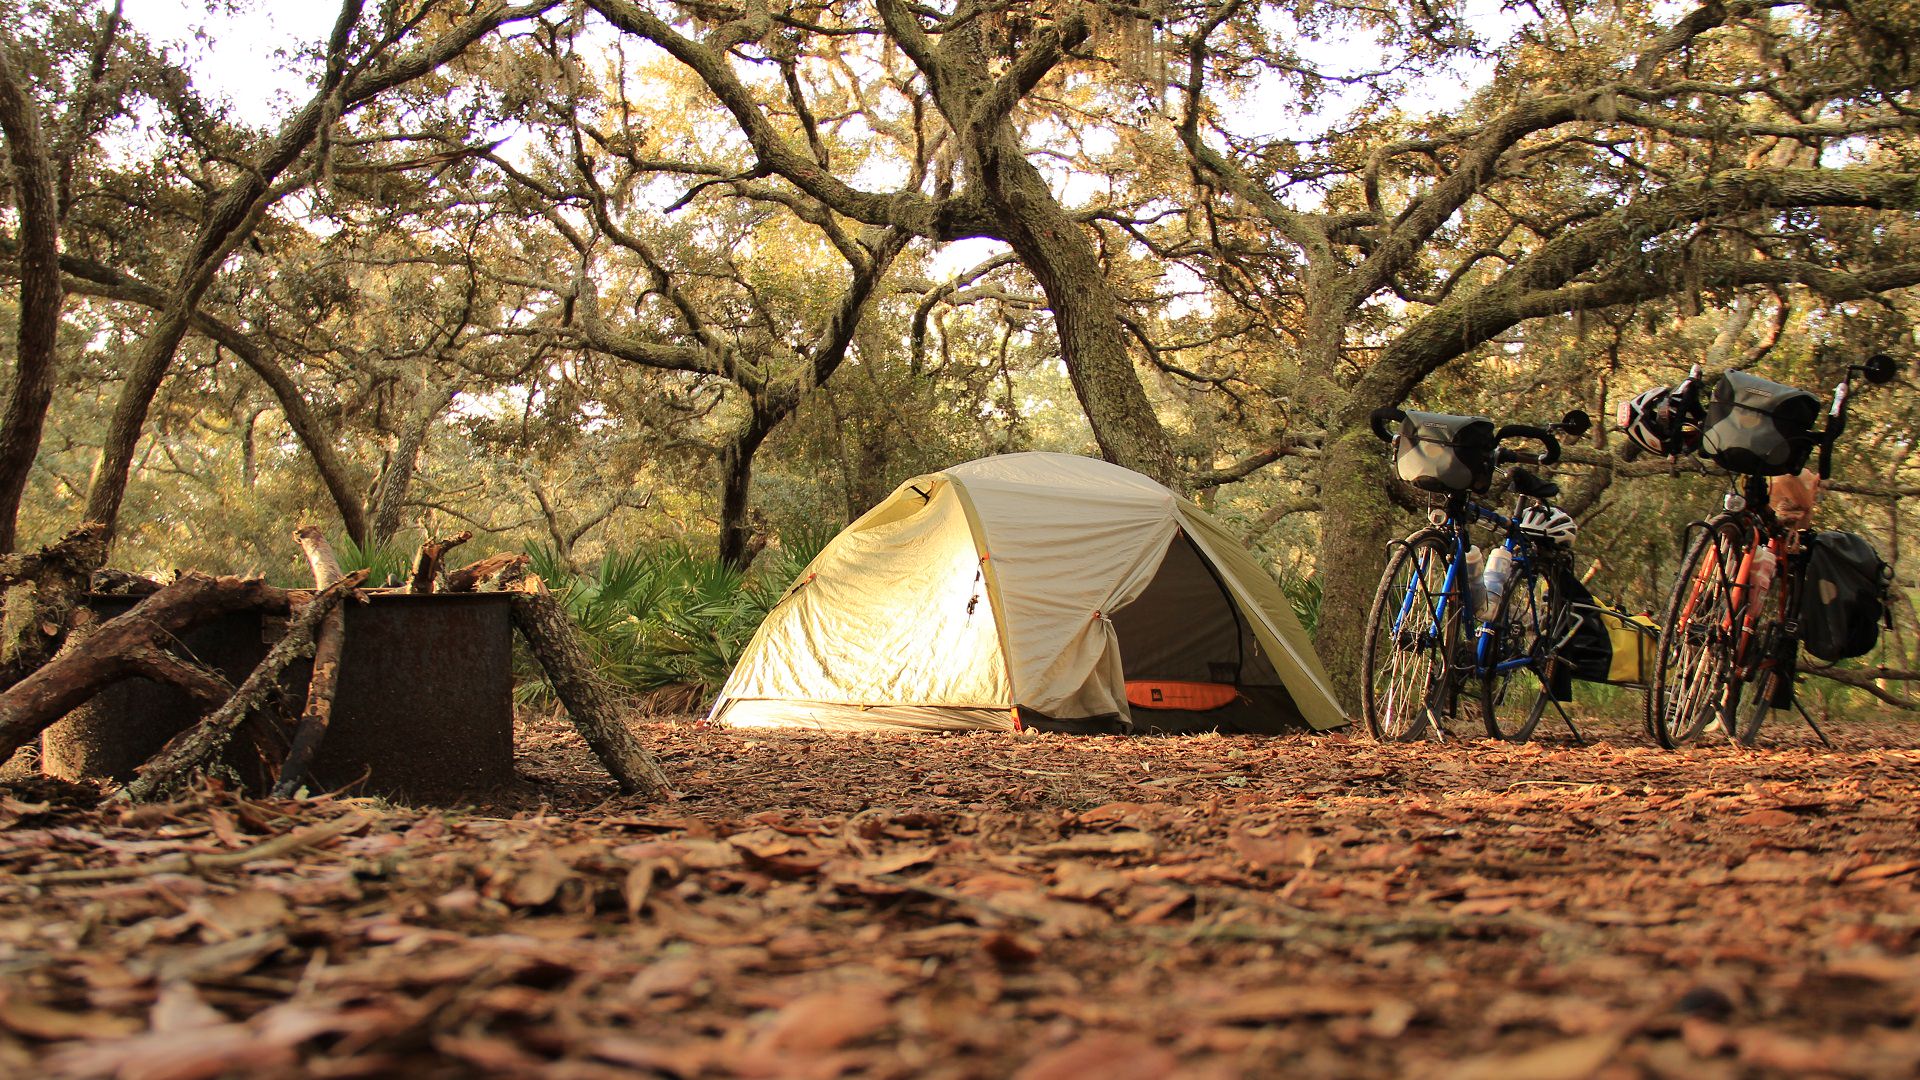 Travel camp. Палатка в горах. Палатка в лесу. Поход с палатками. Обустройство лагеря на природе с палатками.